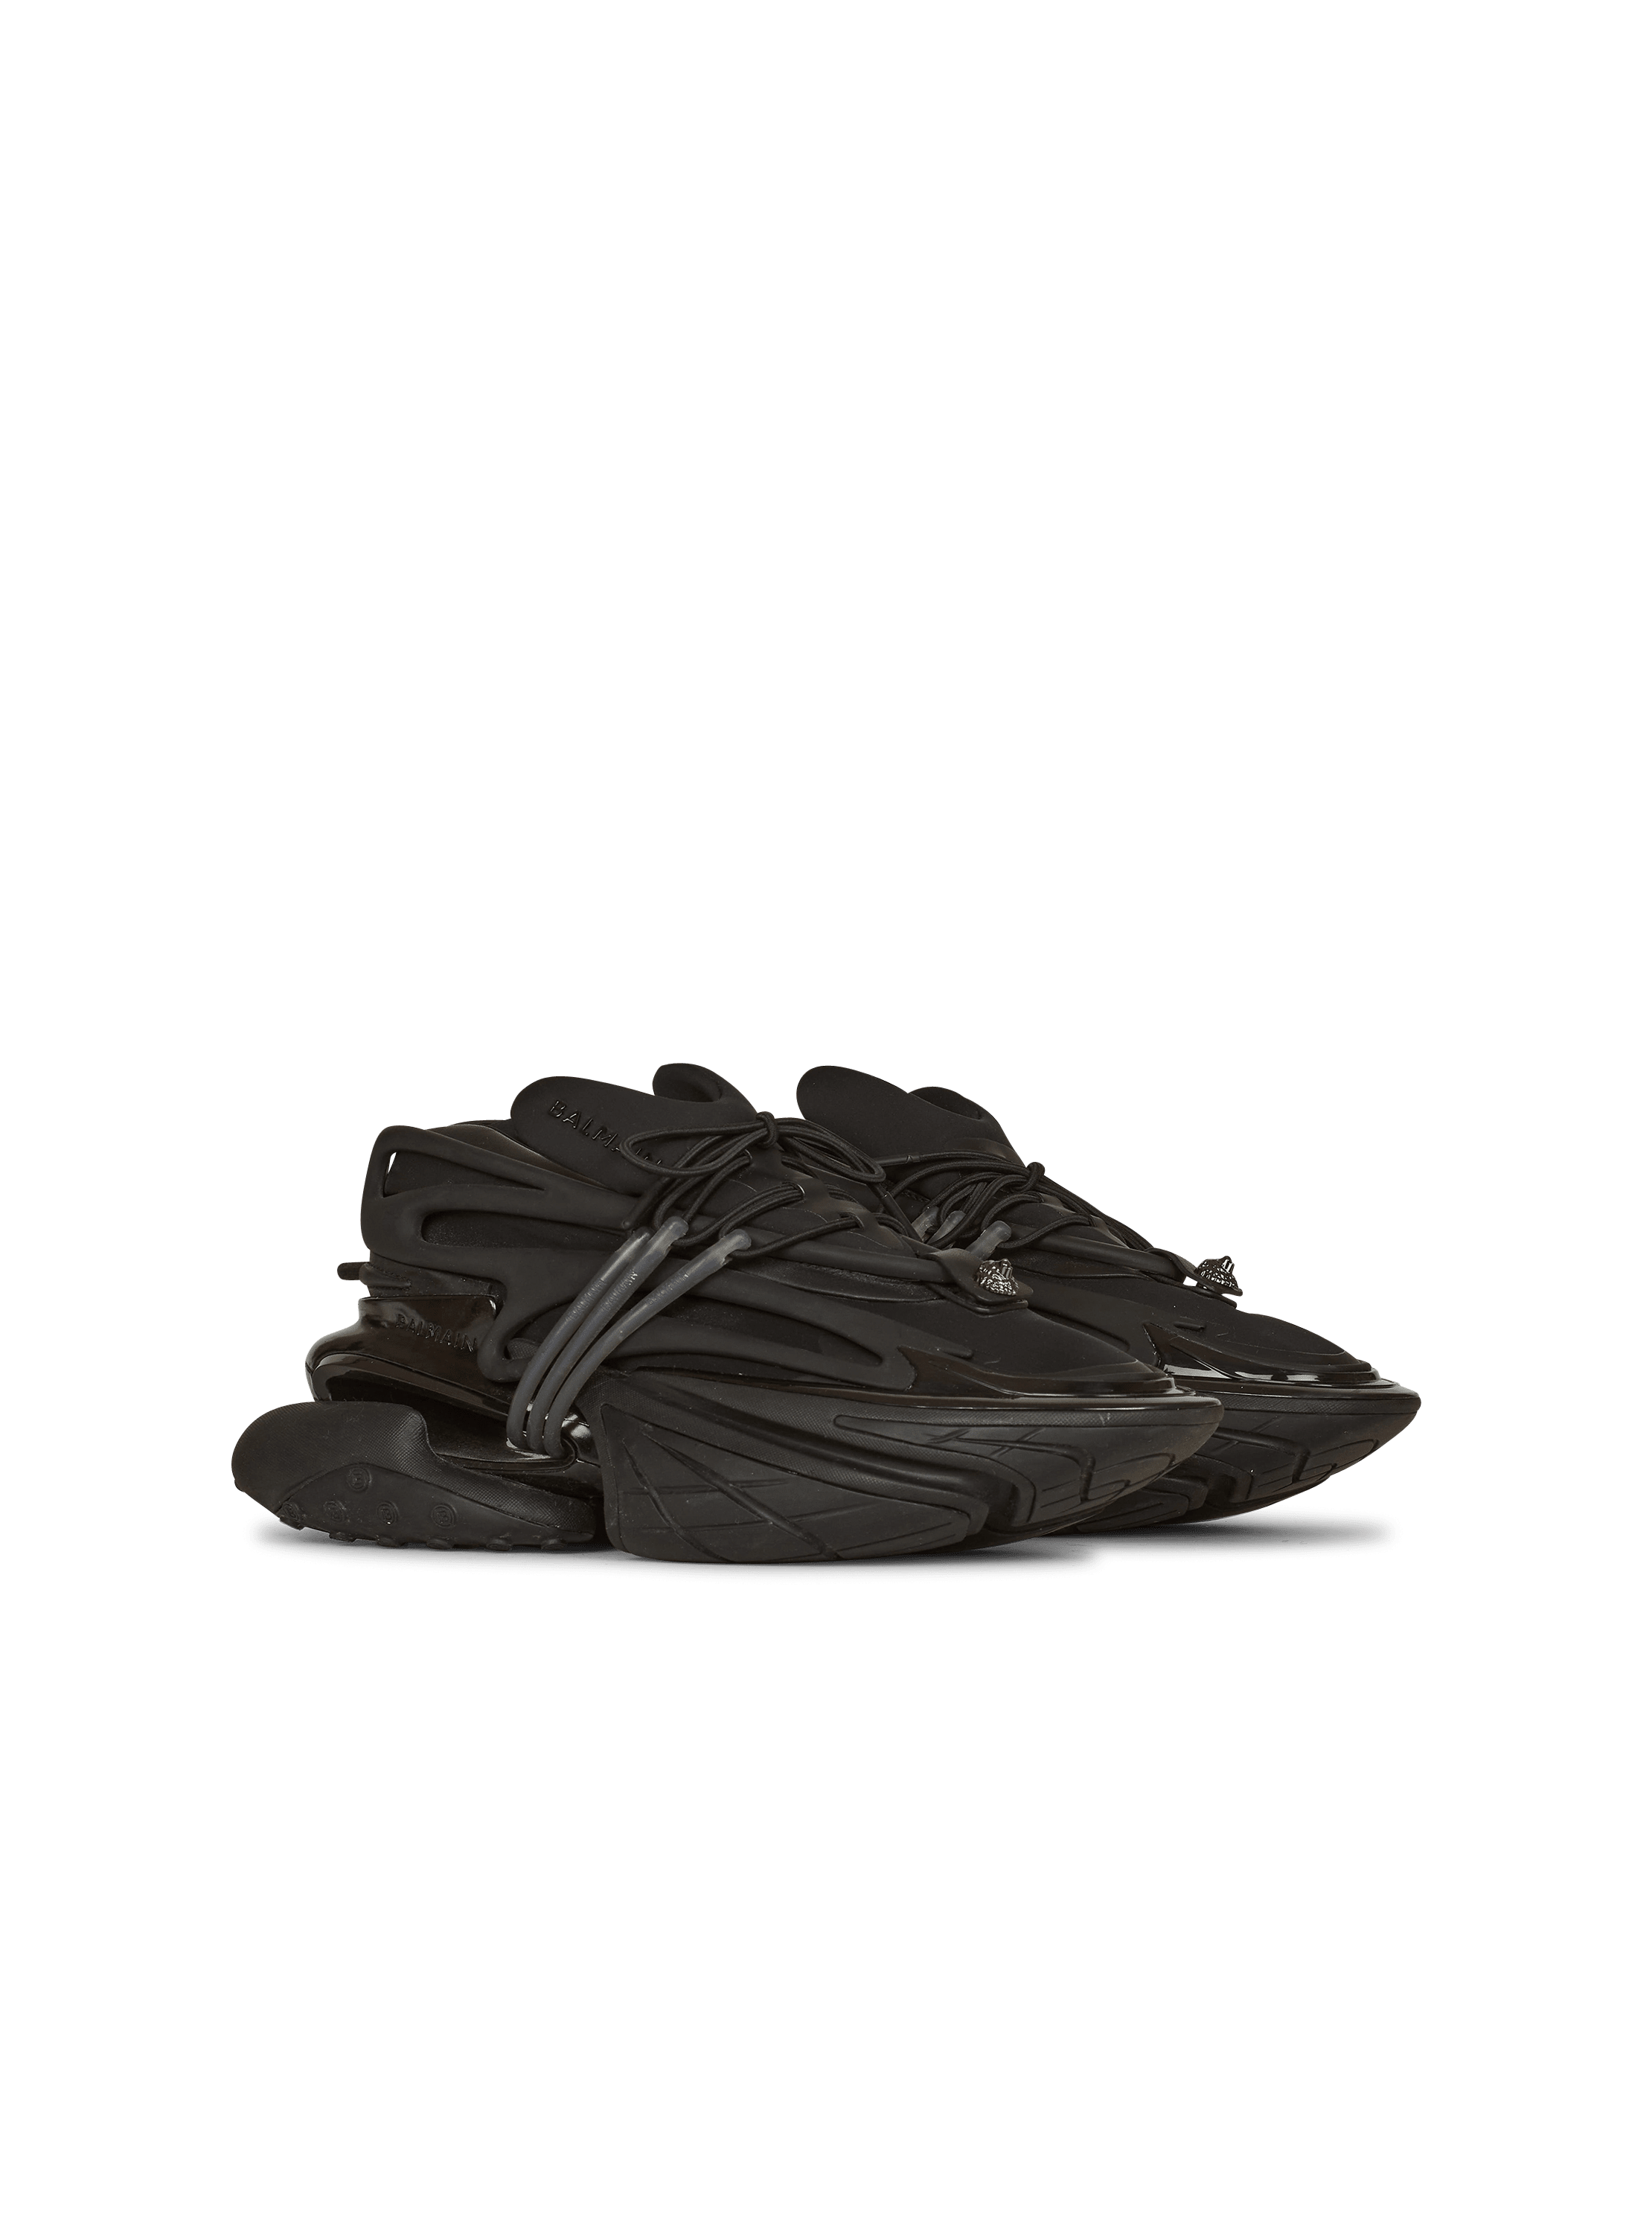 Balmain Men's Unicorn Sneakers - Black - Low-top Sneakers - 8